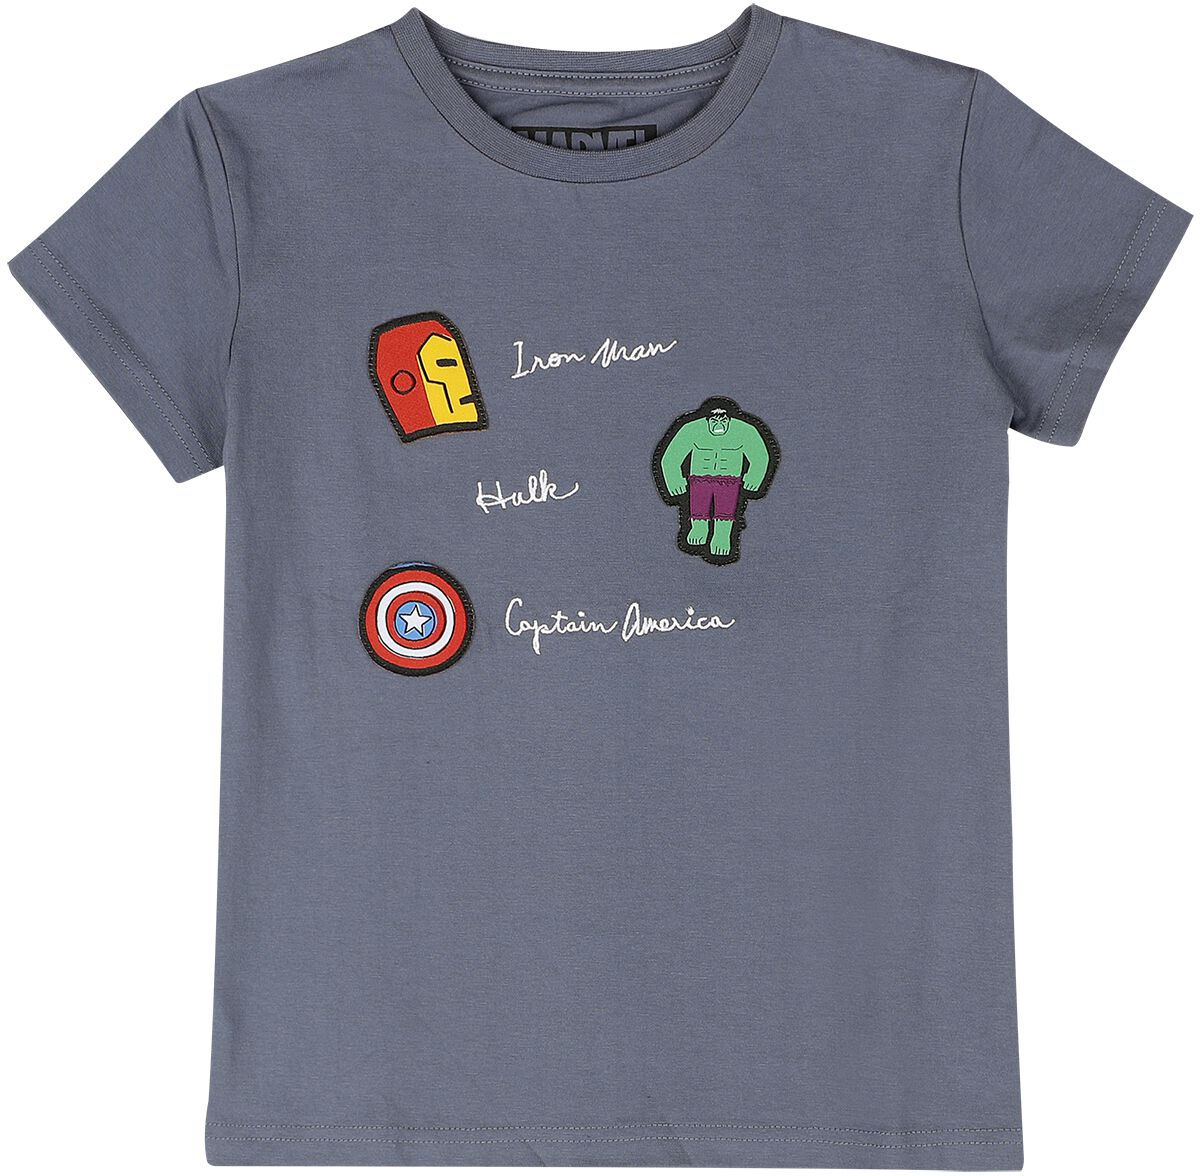 Marvel - Marvel T-Shirt für Kinder - Superheroes - für Mädchen & Jungen - blaugrau  - EMP exklusives Merchandise!